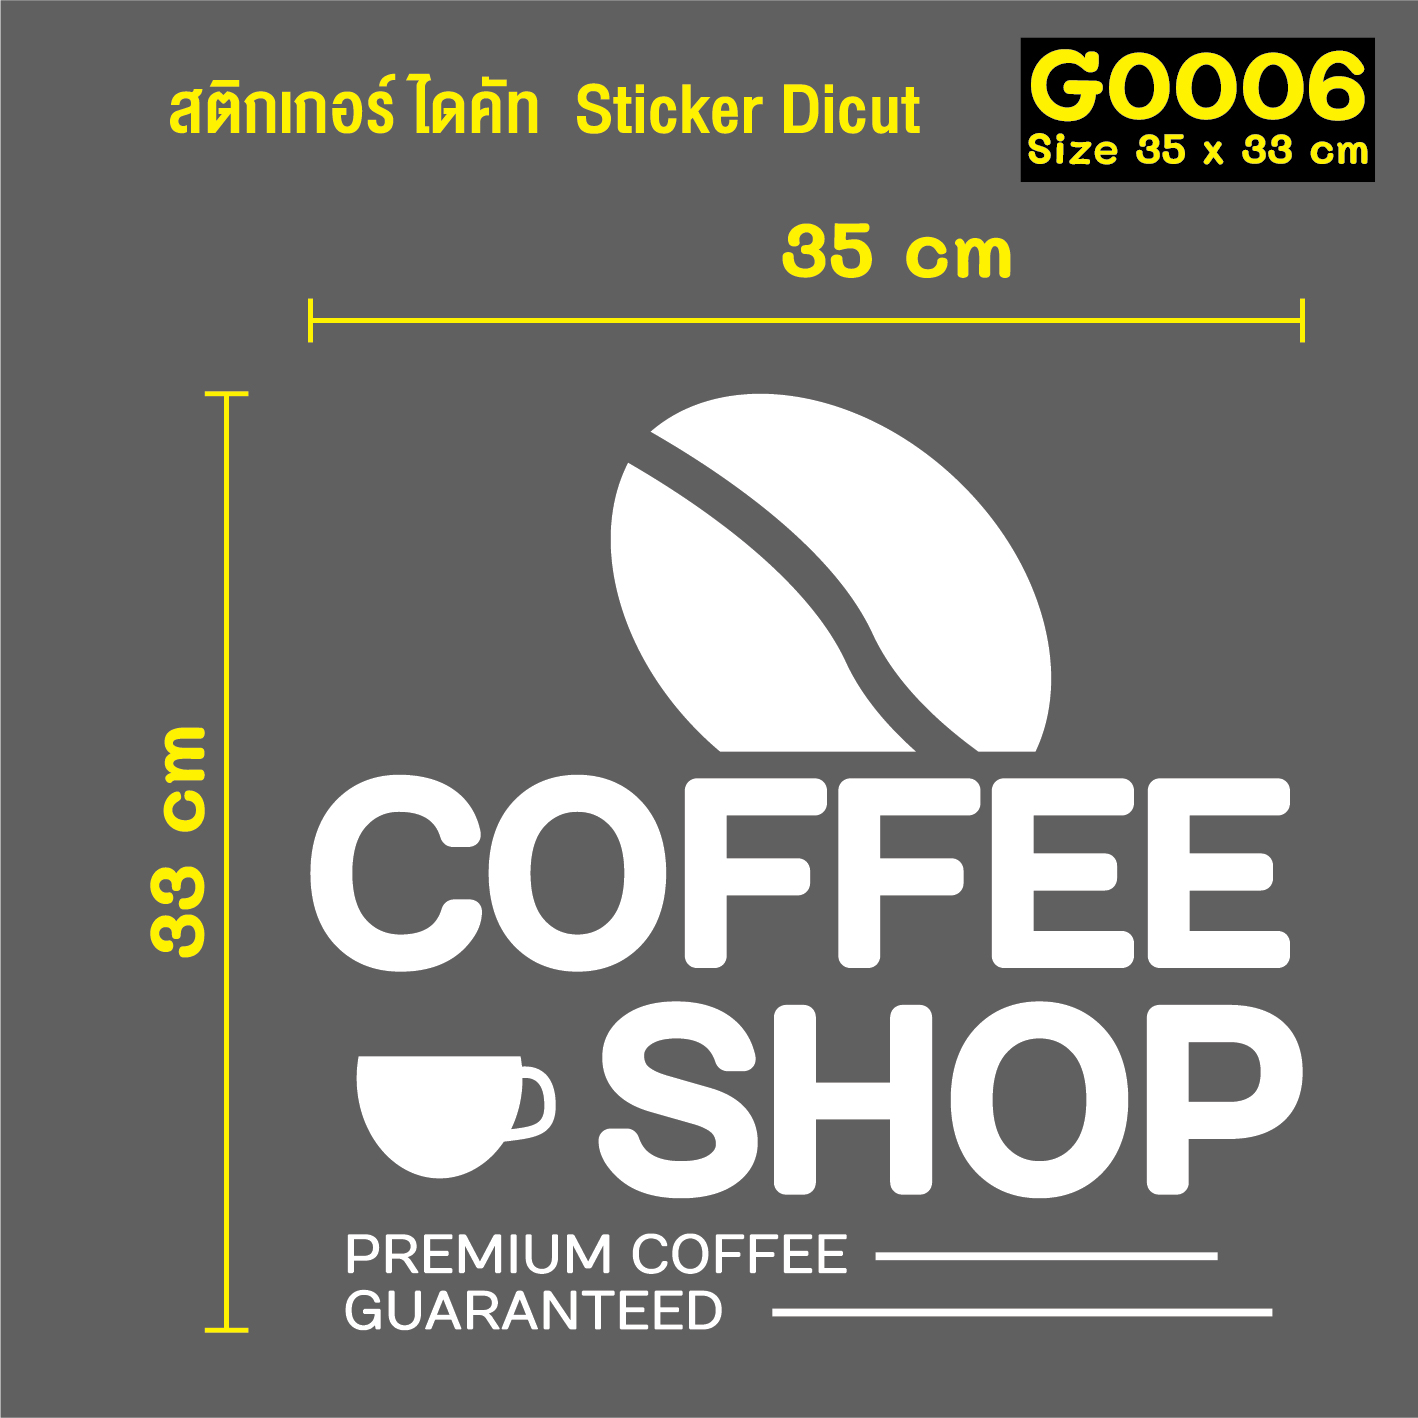 สติ๊กเกอร์ติดกระจก สติกเกอร์ร้านกาแฟ coffee shop Size 35 x 33 cm.(G0006) สี ดำ